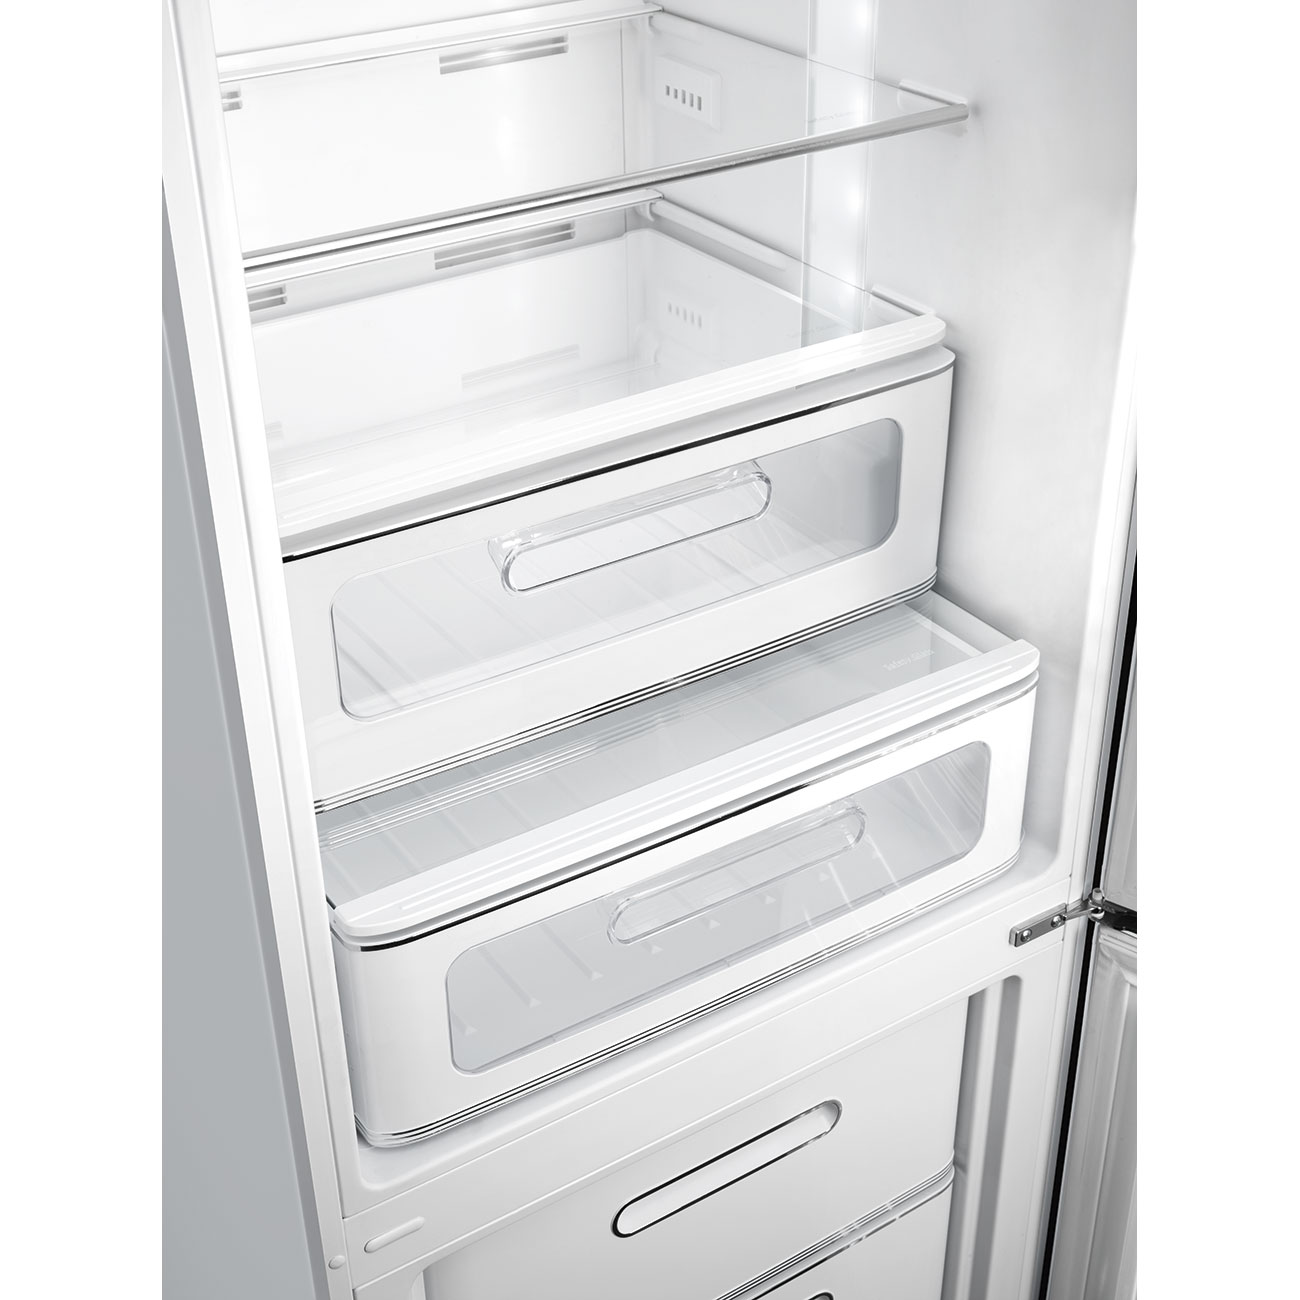 Silver refrigerator - Smeg_3